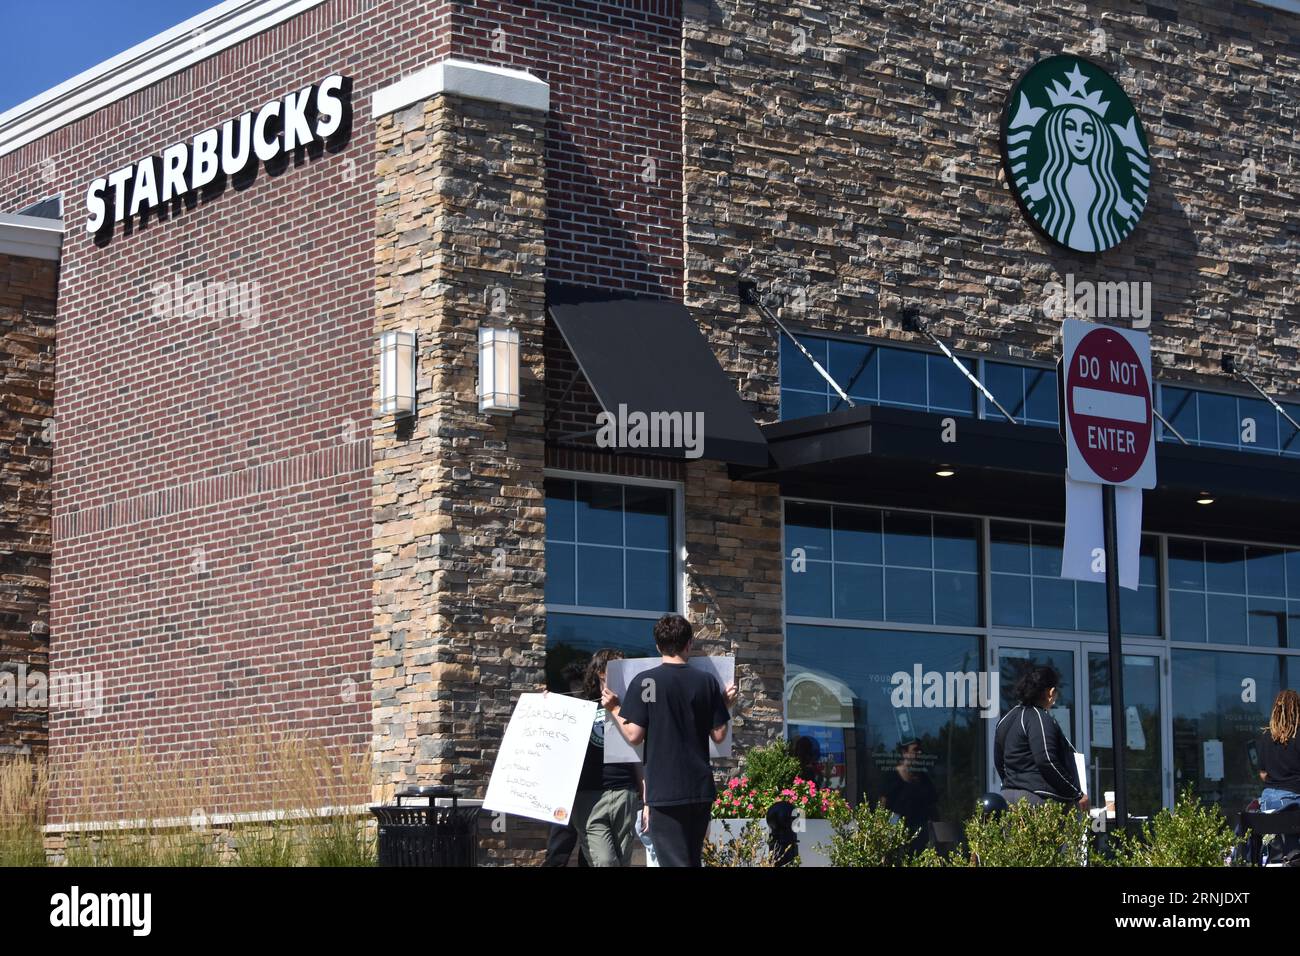 Starbucks-Mitarbeiter gehen mit Plakaten vom Arbeitsplatz weg, um den Streik im Starbucks Coffee Shop in Ledgewood zu unterstützen. Starbucks-Mitarbeiter streiken in den New Jersey-Städten Montclair, Summit und Ledgewood und streiken auch in Danbury, Connecticut. Arbeiter gingen von der Arbeit in den verschiedenen Filialen des Coffee Shops, sie gingen in einen unfairen Arbeitsstreik (ULP), um gegen die Entlassung von Celeste Cruz, Schichtleiterin am Starbucks-Standort Montclair, New Jersey, zu protestieren. „Der heutige ULP-Streik ist ein Protest gegen die ungerechte Entlassung von Celeste Cruz, die seit über fünf Jahren bei Starbucks beschäftigt ist Stockfoto